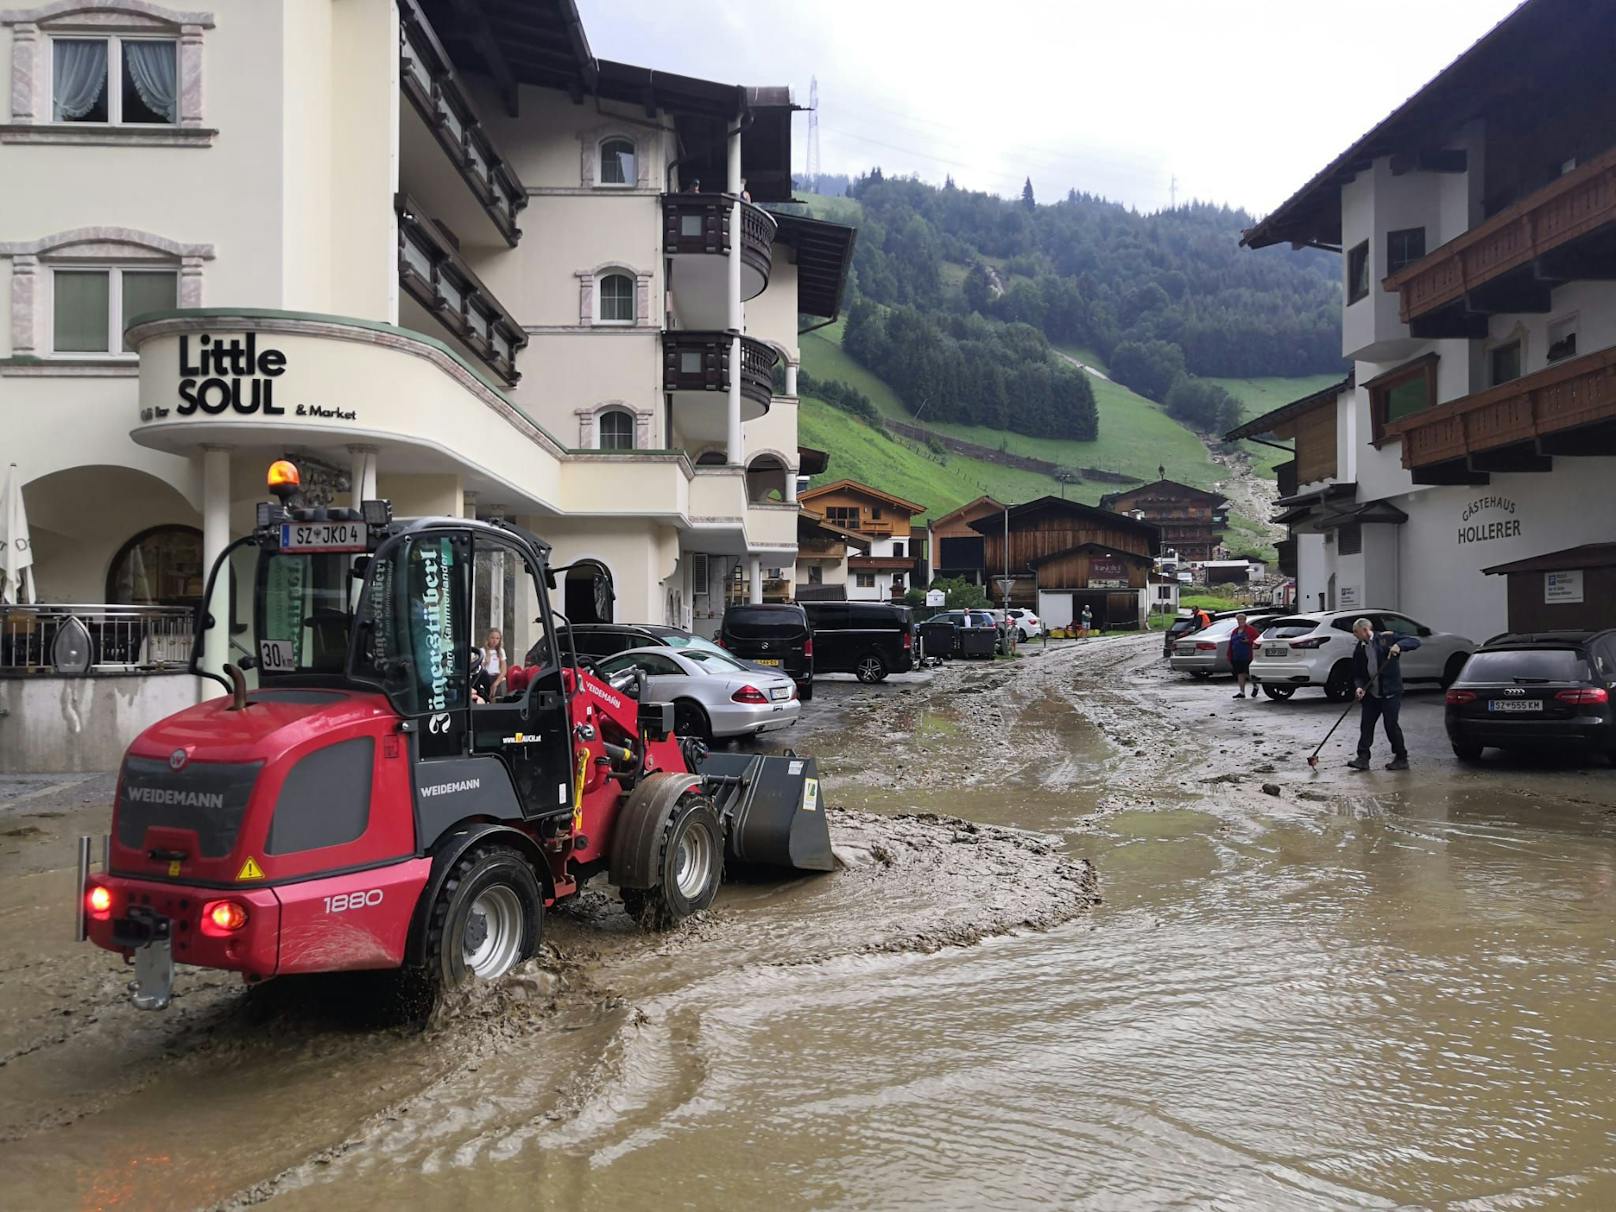 Schwere Unwetter haben am Freitag in Tirol eine Spur der Verwüstung hinterlassen. <a target="_blank" data-li-document-ref="100221346" href="https://www.heute.at/g/wetter-100221346">Mehr dazu HIER &gt;&gt;</a>